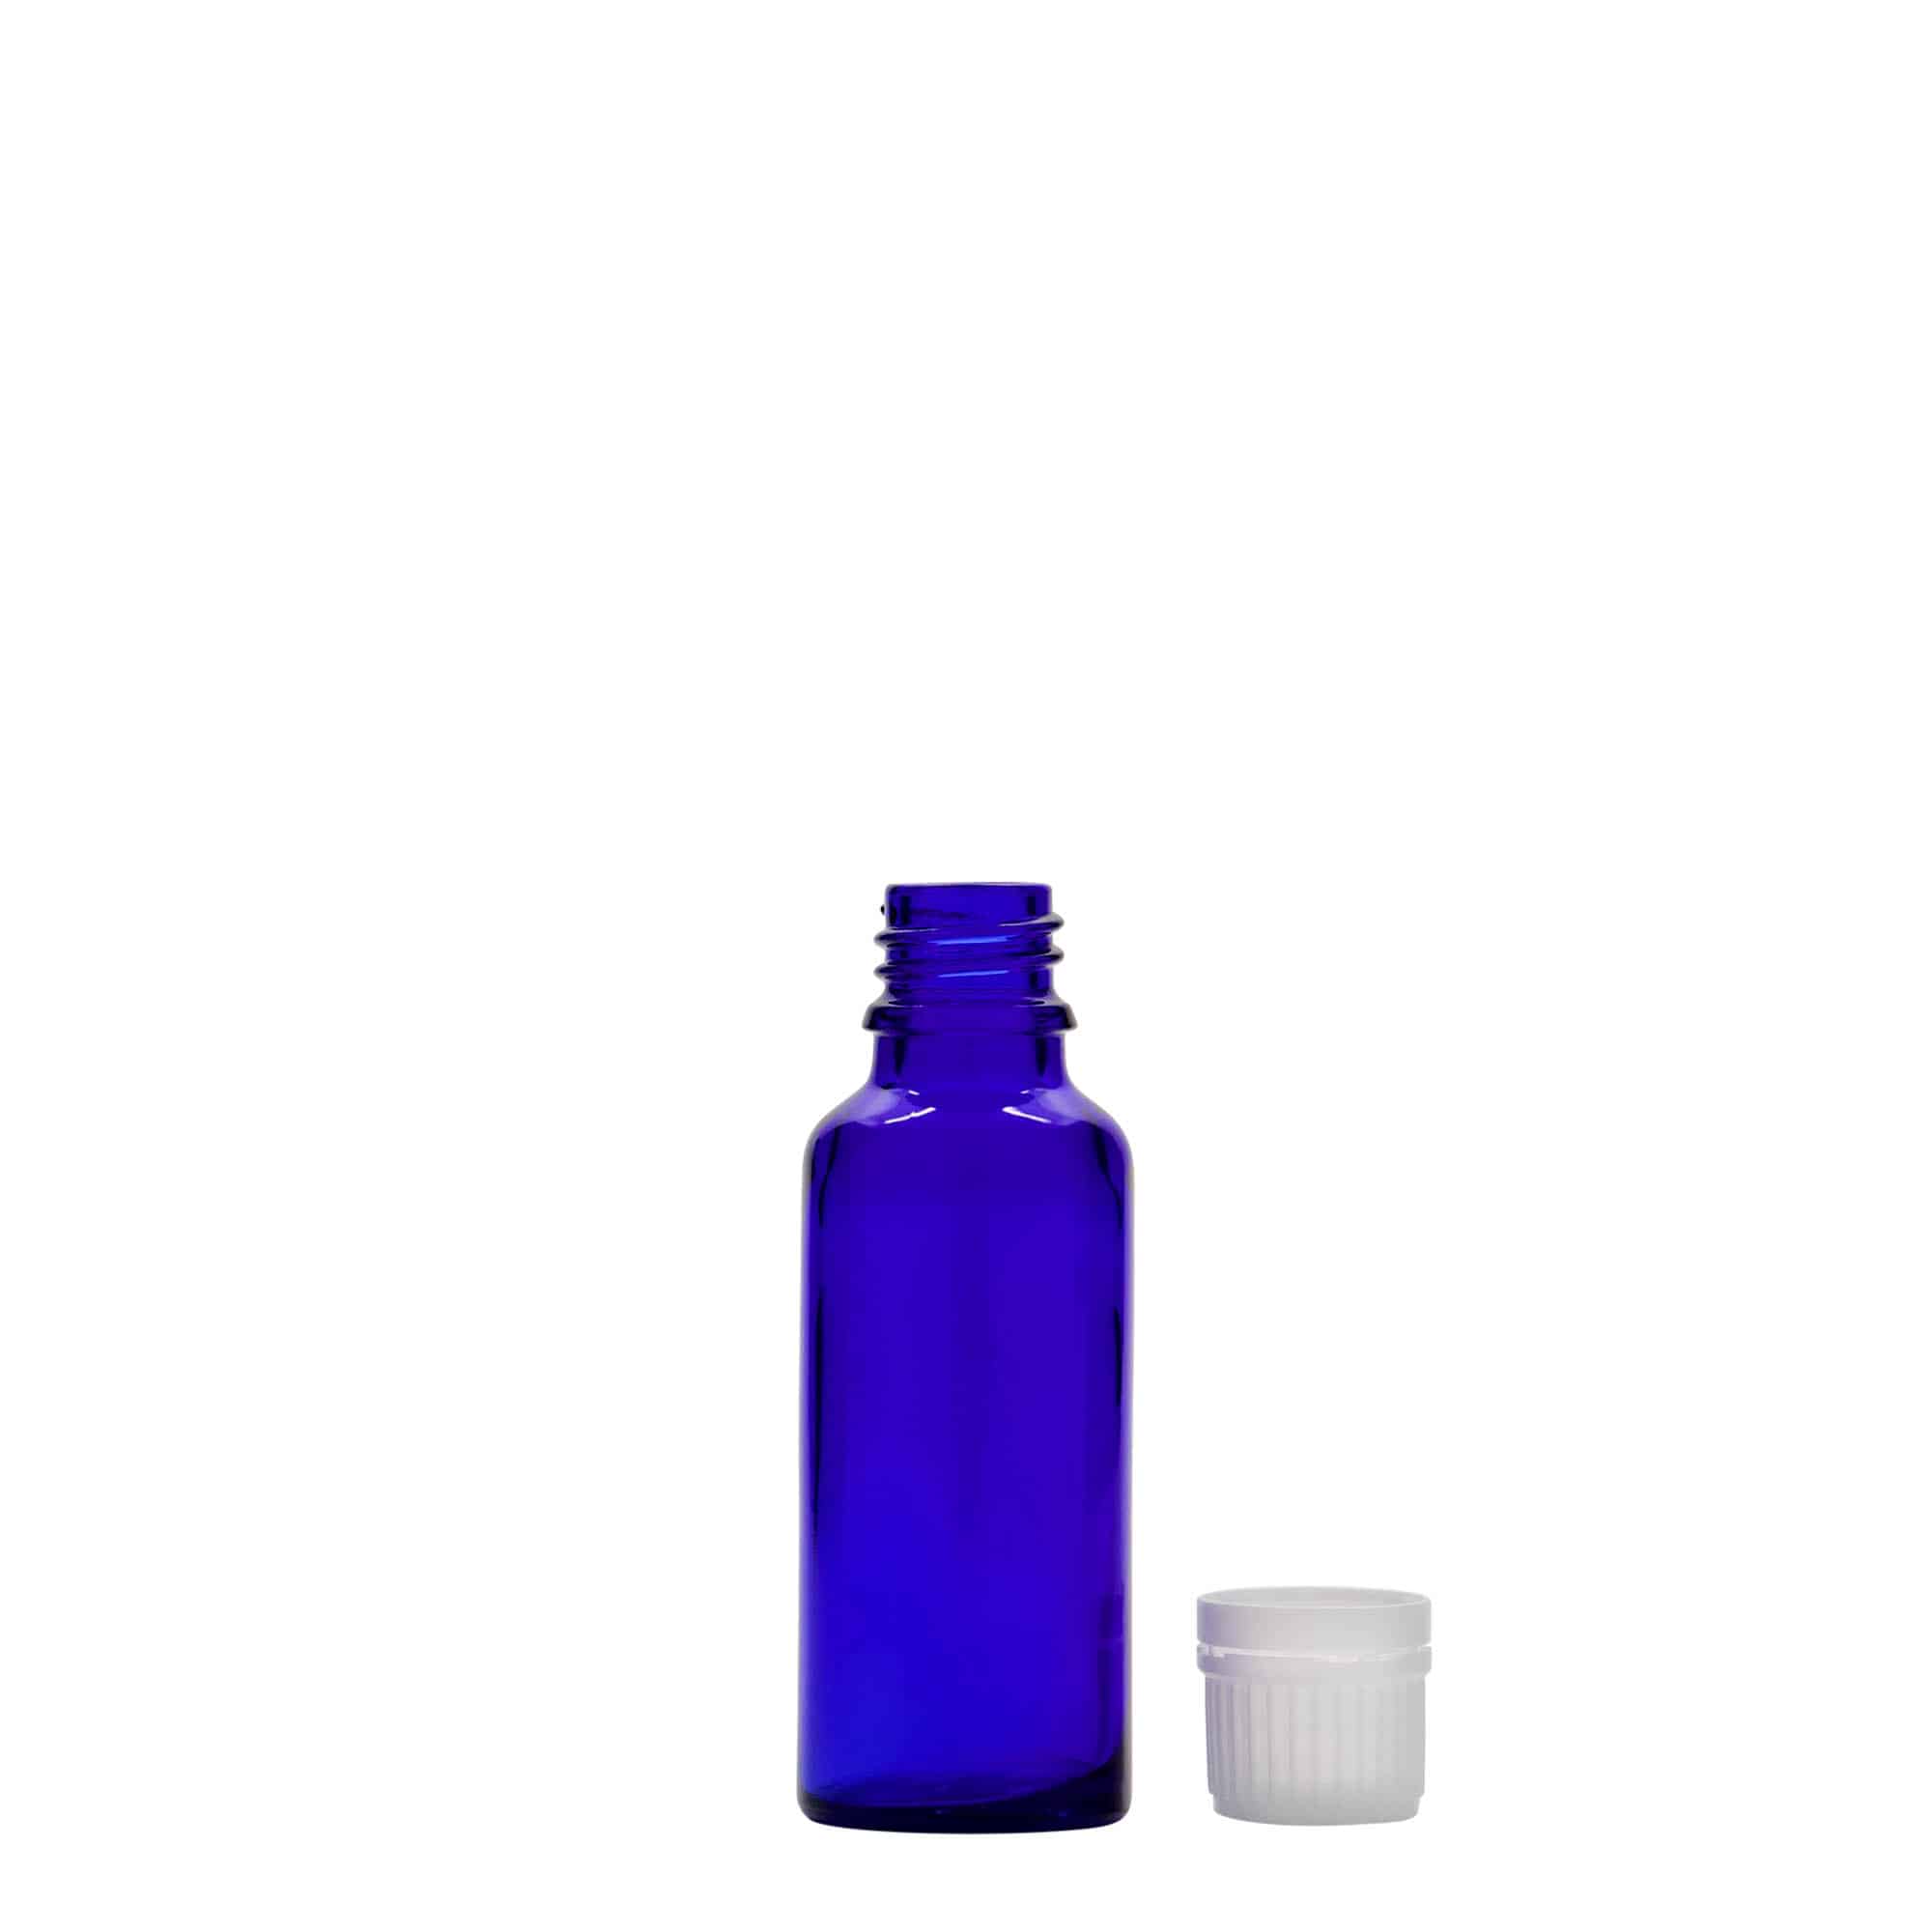 Lékovka 30 ml, sklo, královská modř, ústí: DIN 18